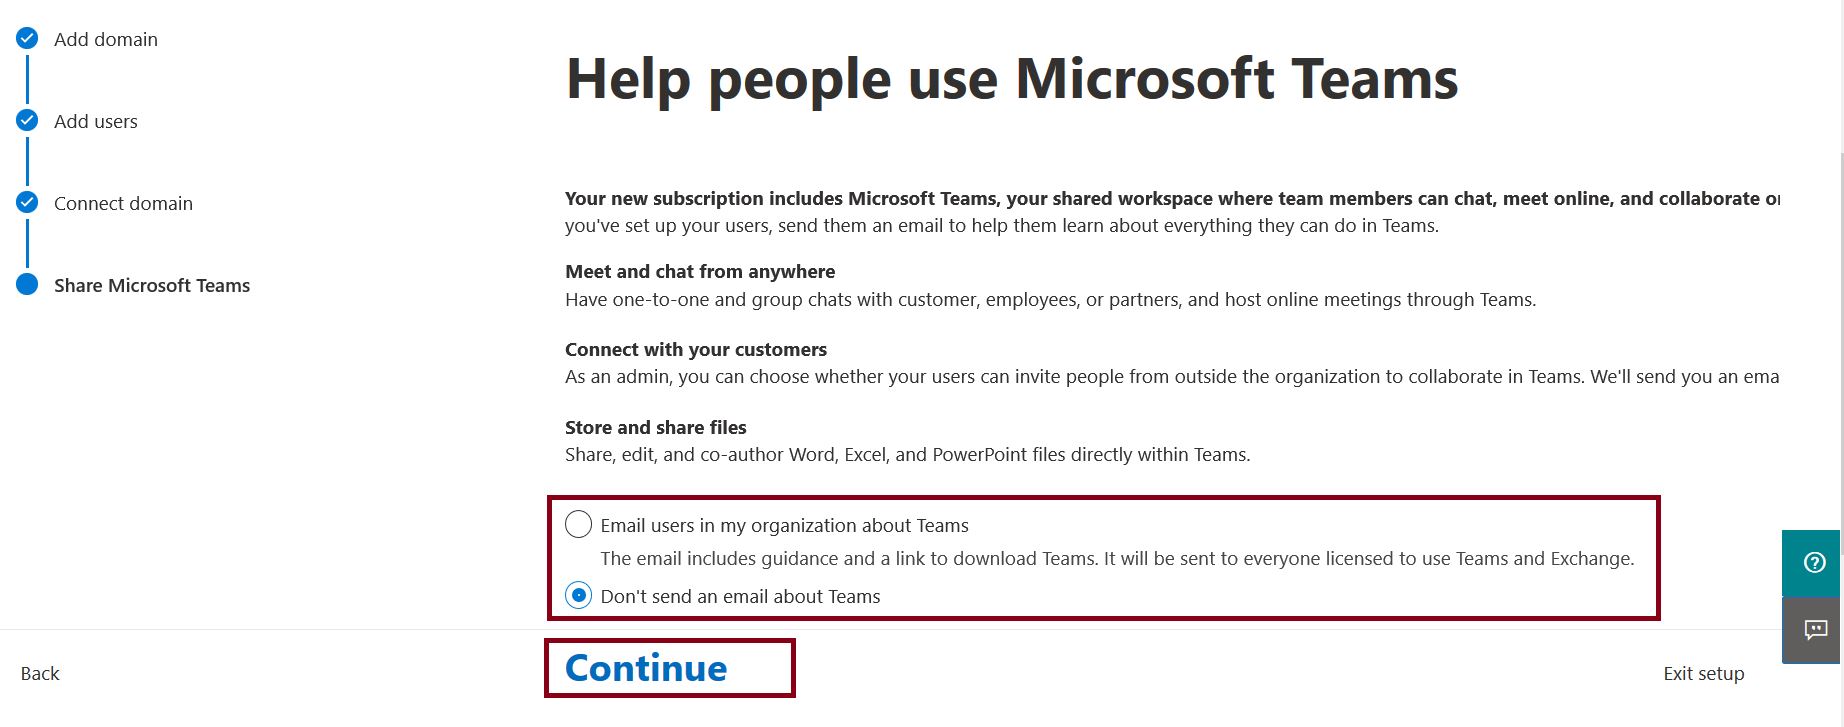 Share Microsoft Teams - Help people use ‎Microsoft Teams‎